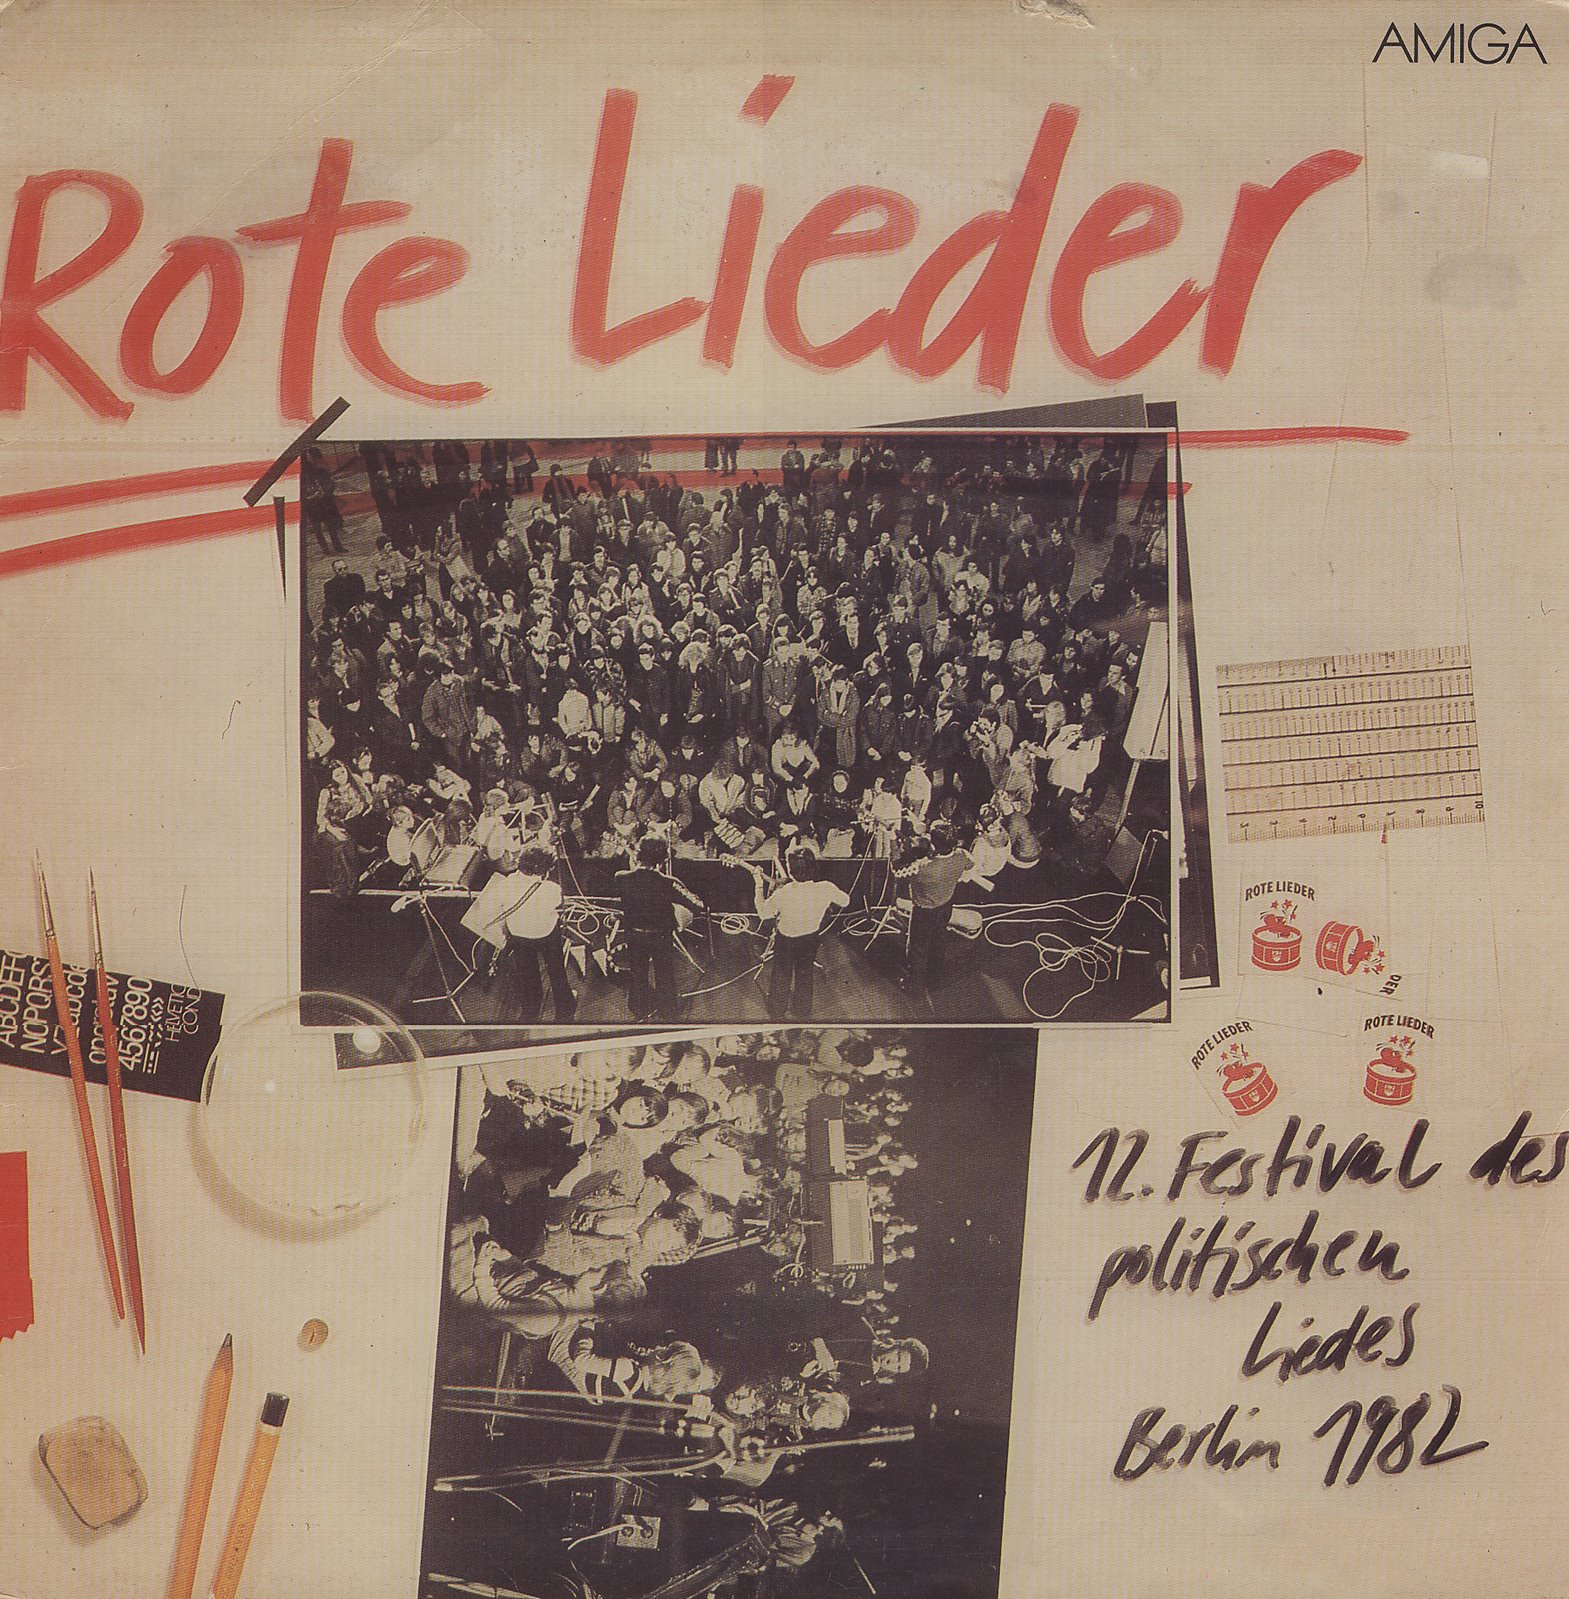 [1982+-+12.+Festival+des+politischen+Liedes+-+titel.jpg]